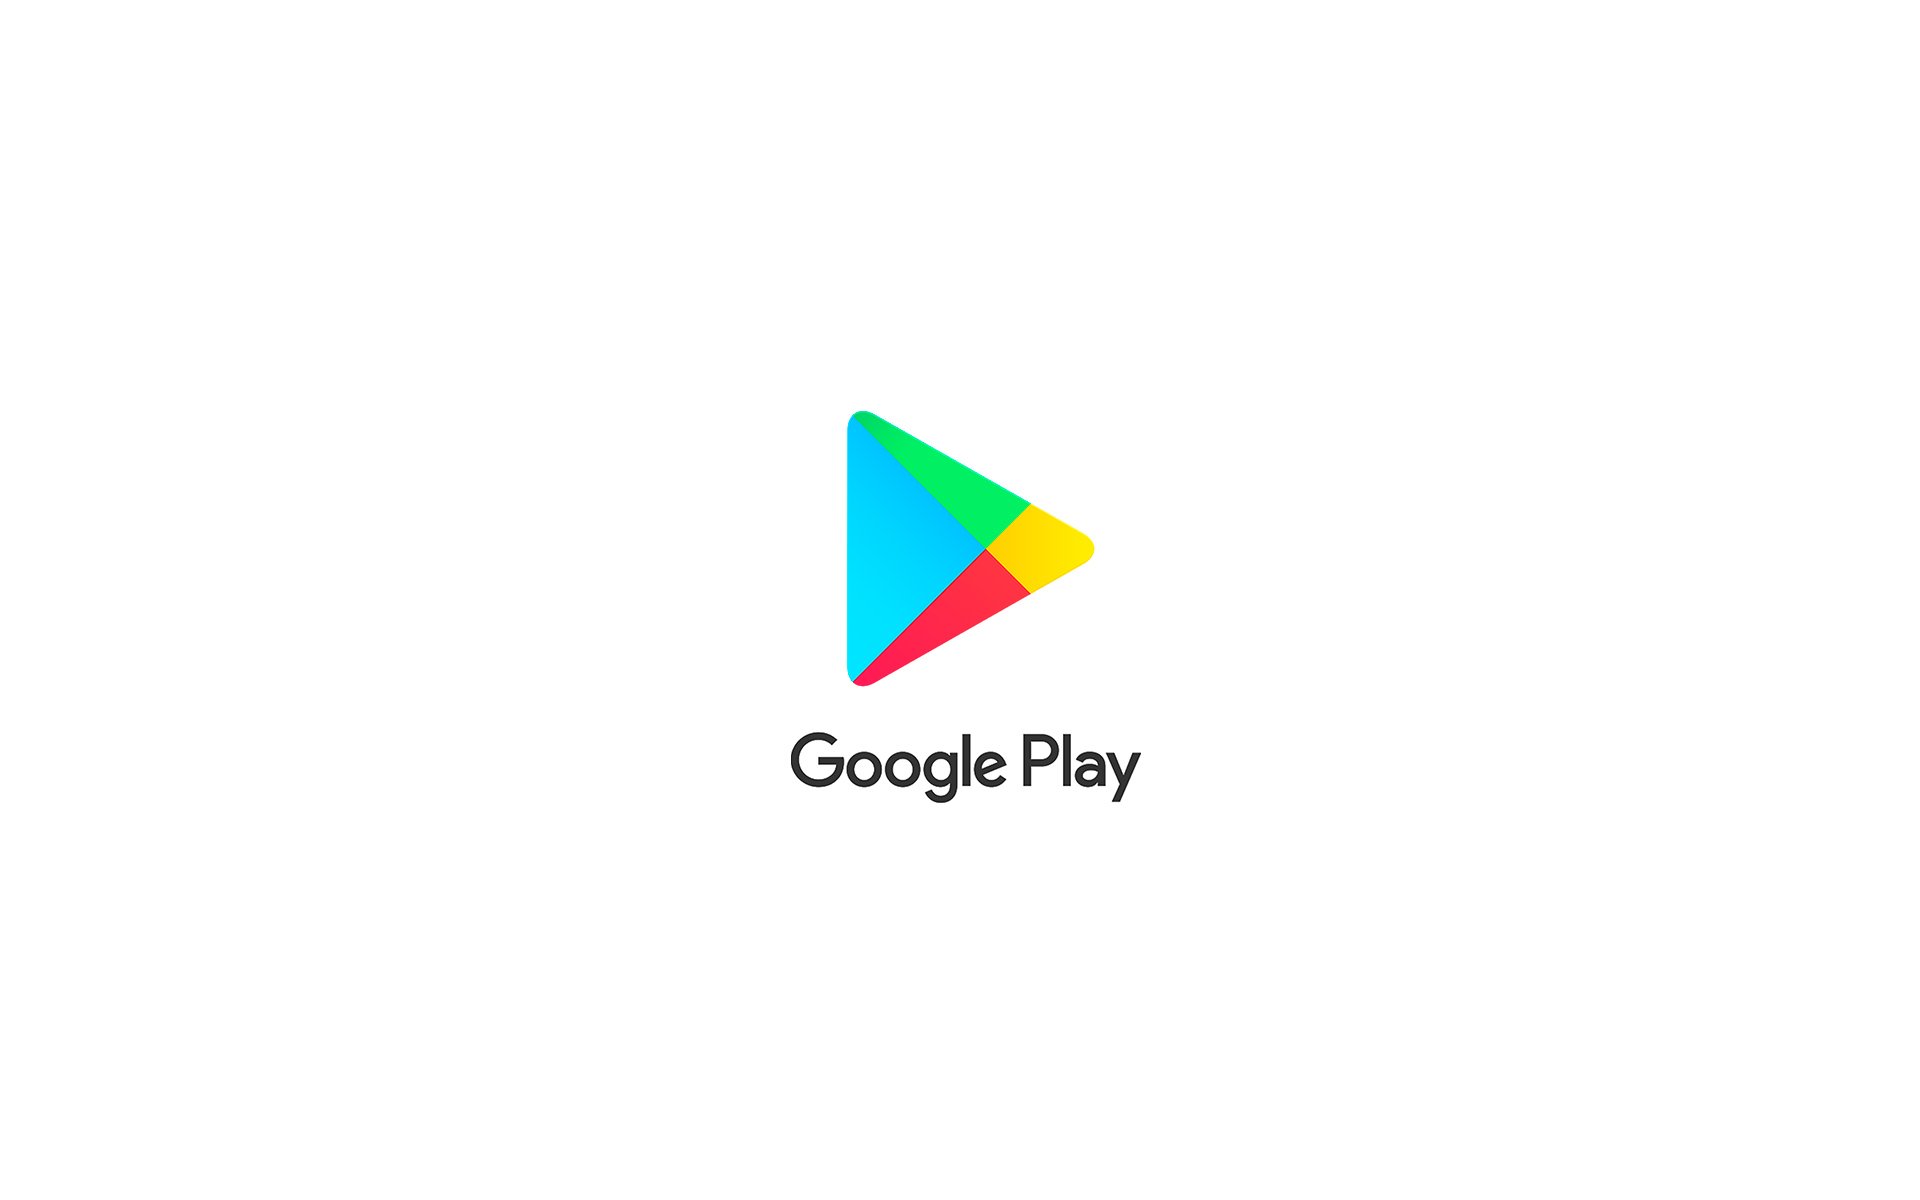 Google Play Loja De Jogos - Gráfico vetorial grátis no Pixabay - Pixabay